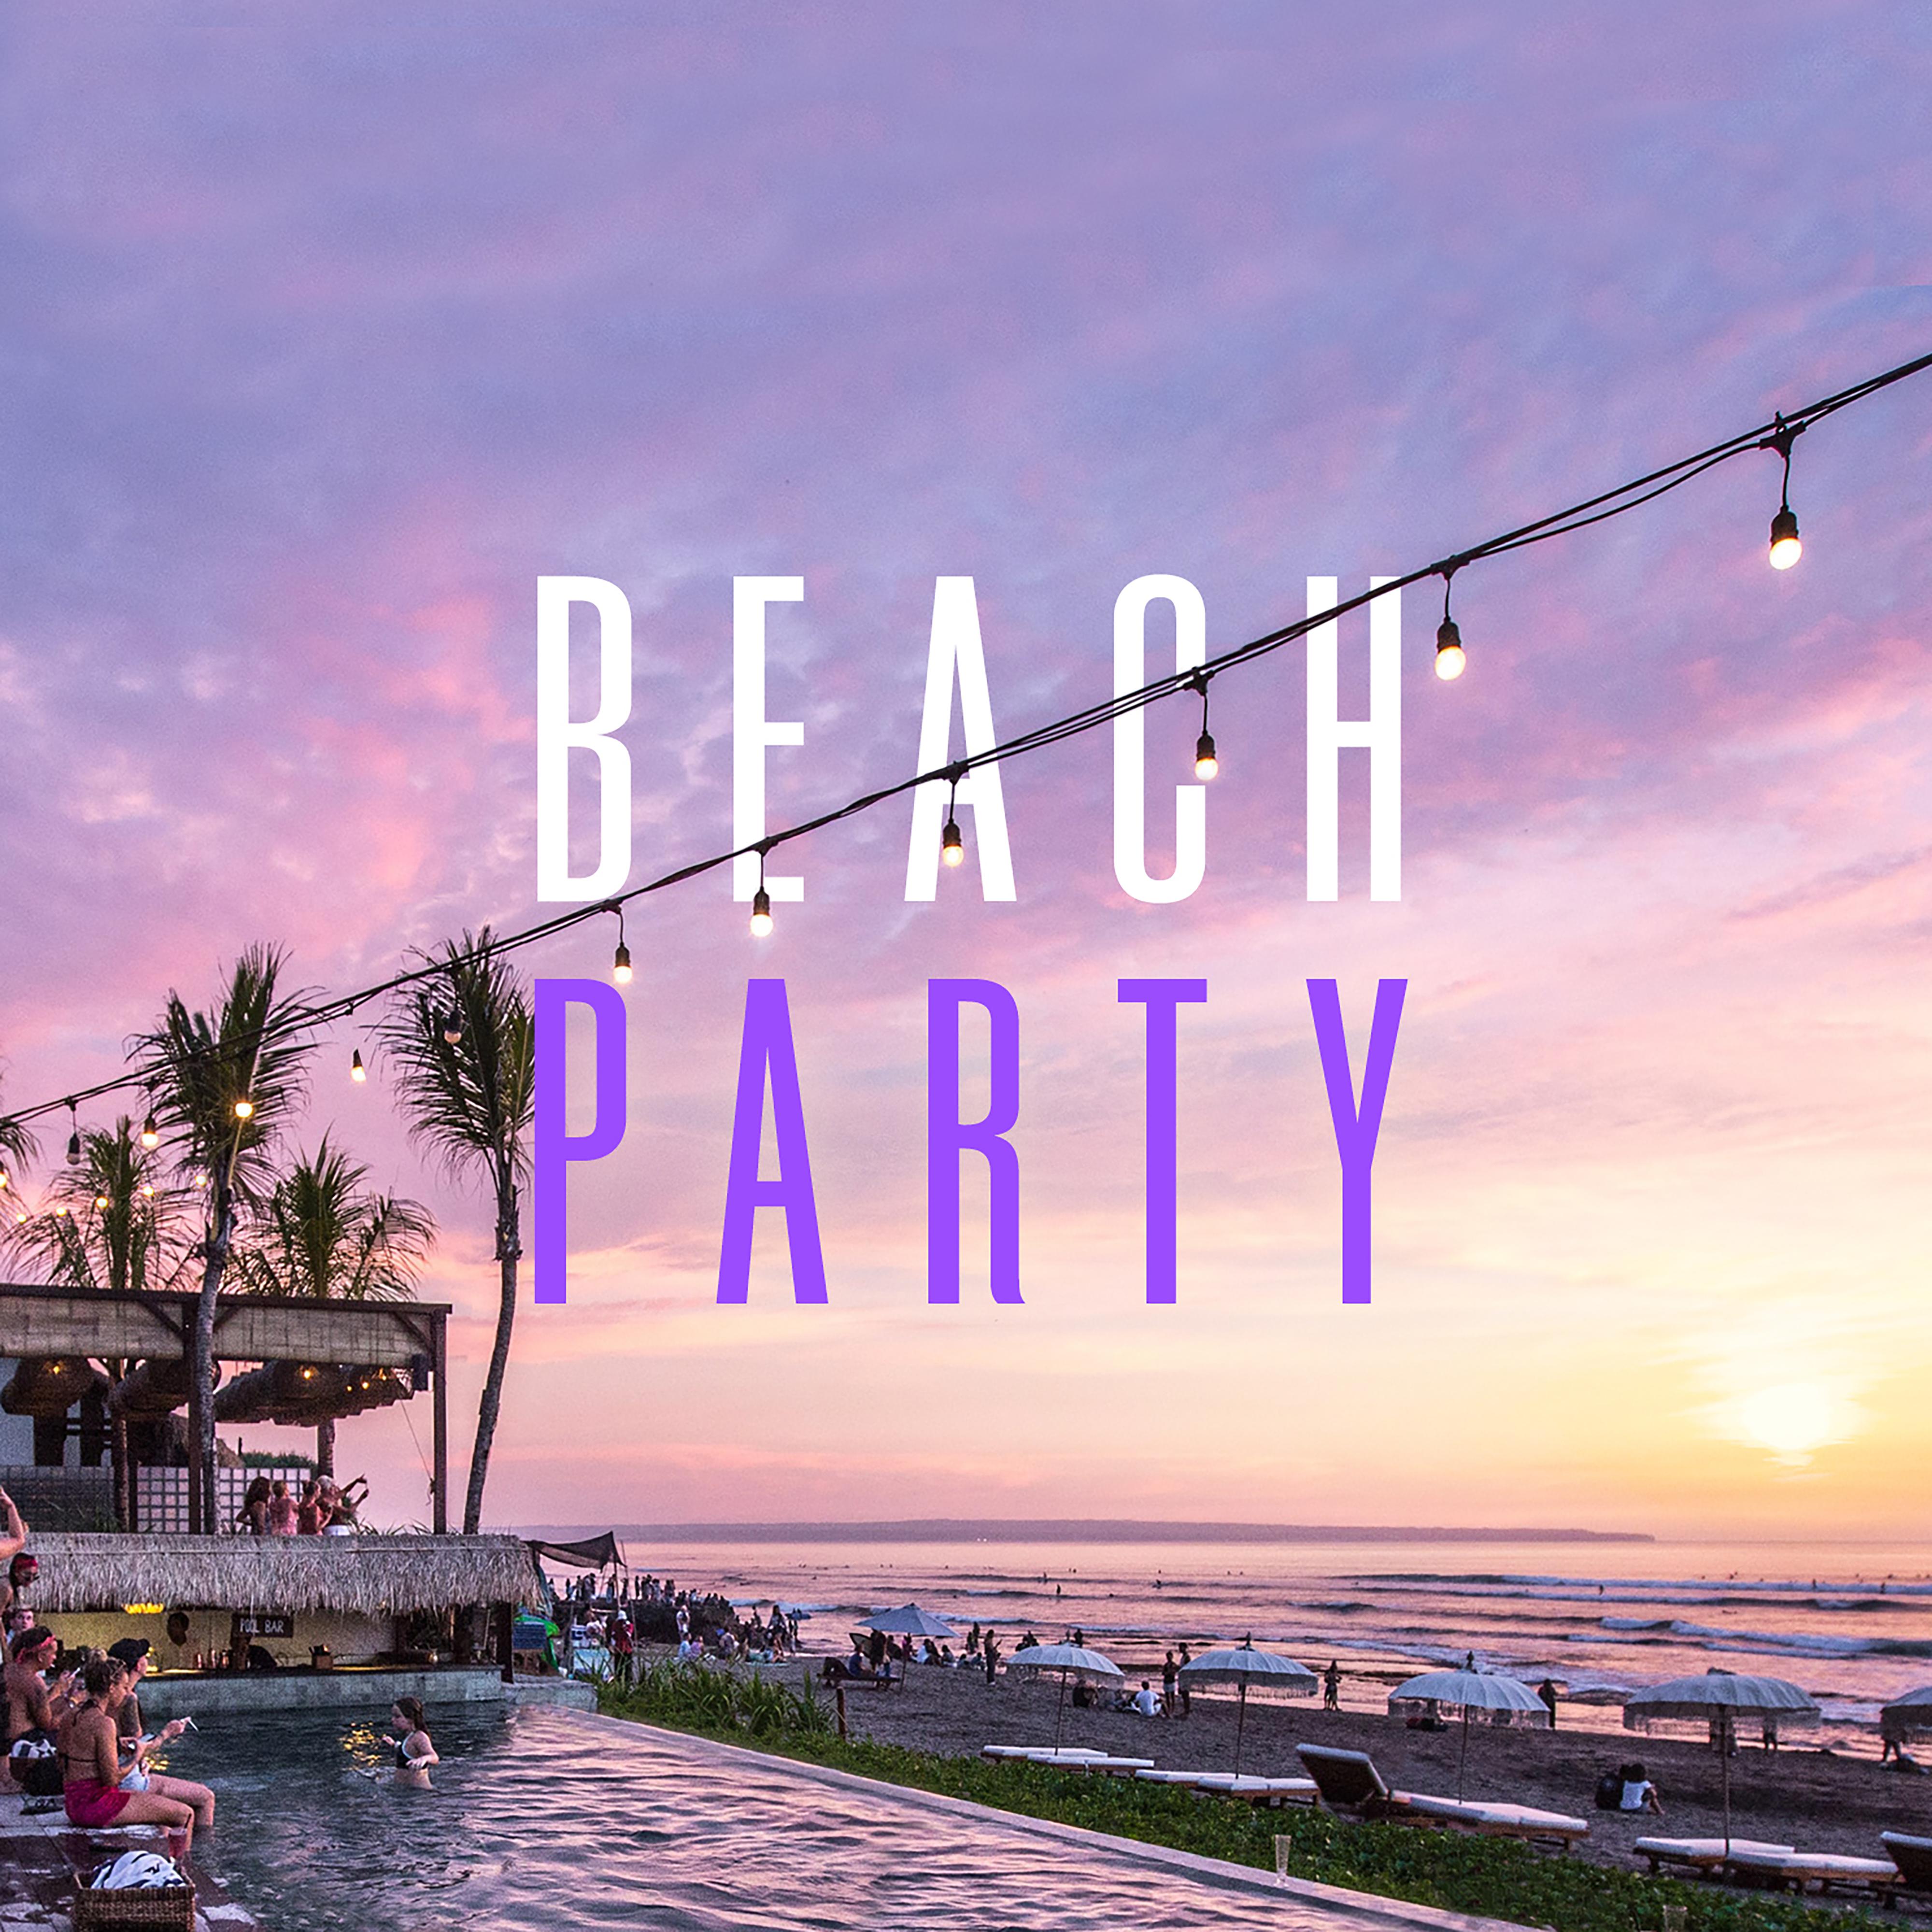 Temperature歌词 歌手Sean Paul-专辑Beach Party-单曲《Temperature》LRC歌词下载